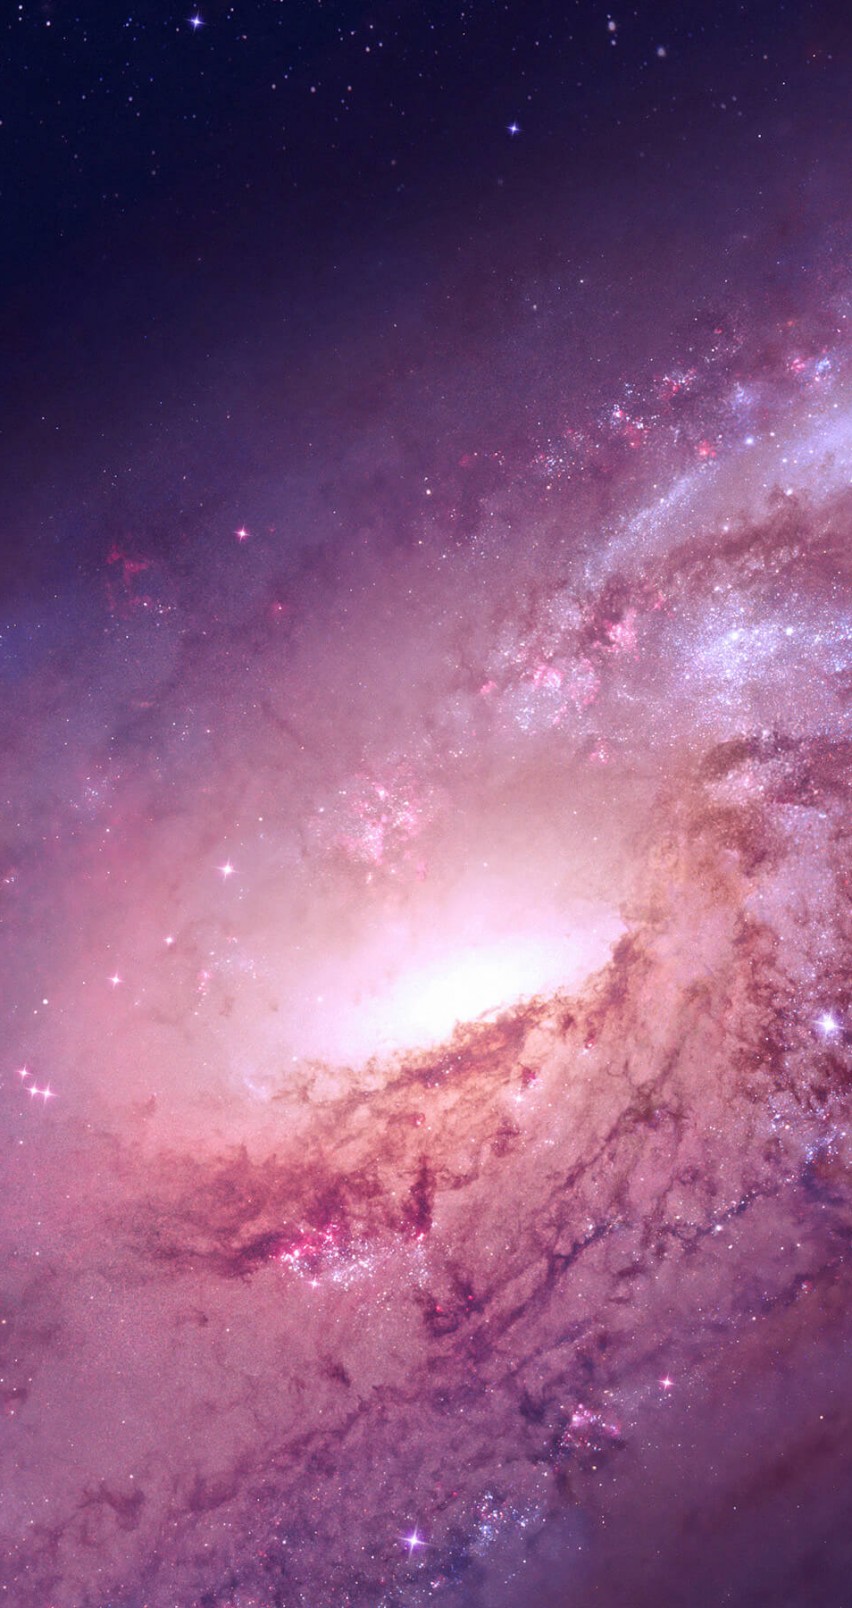 Galaxy M106 HD wallpaper for iPhone HDwallpapersnet